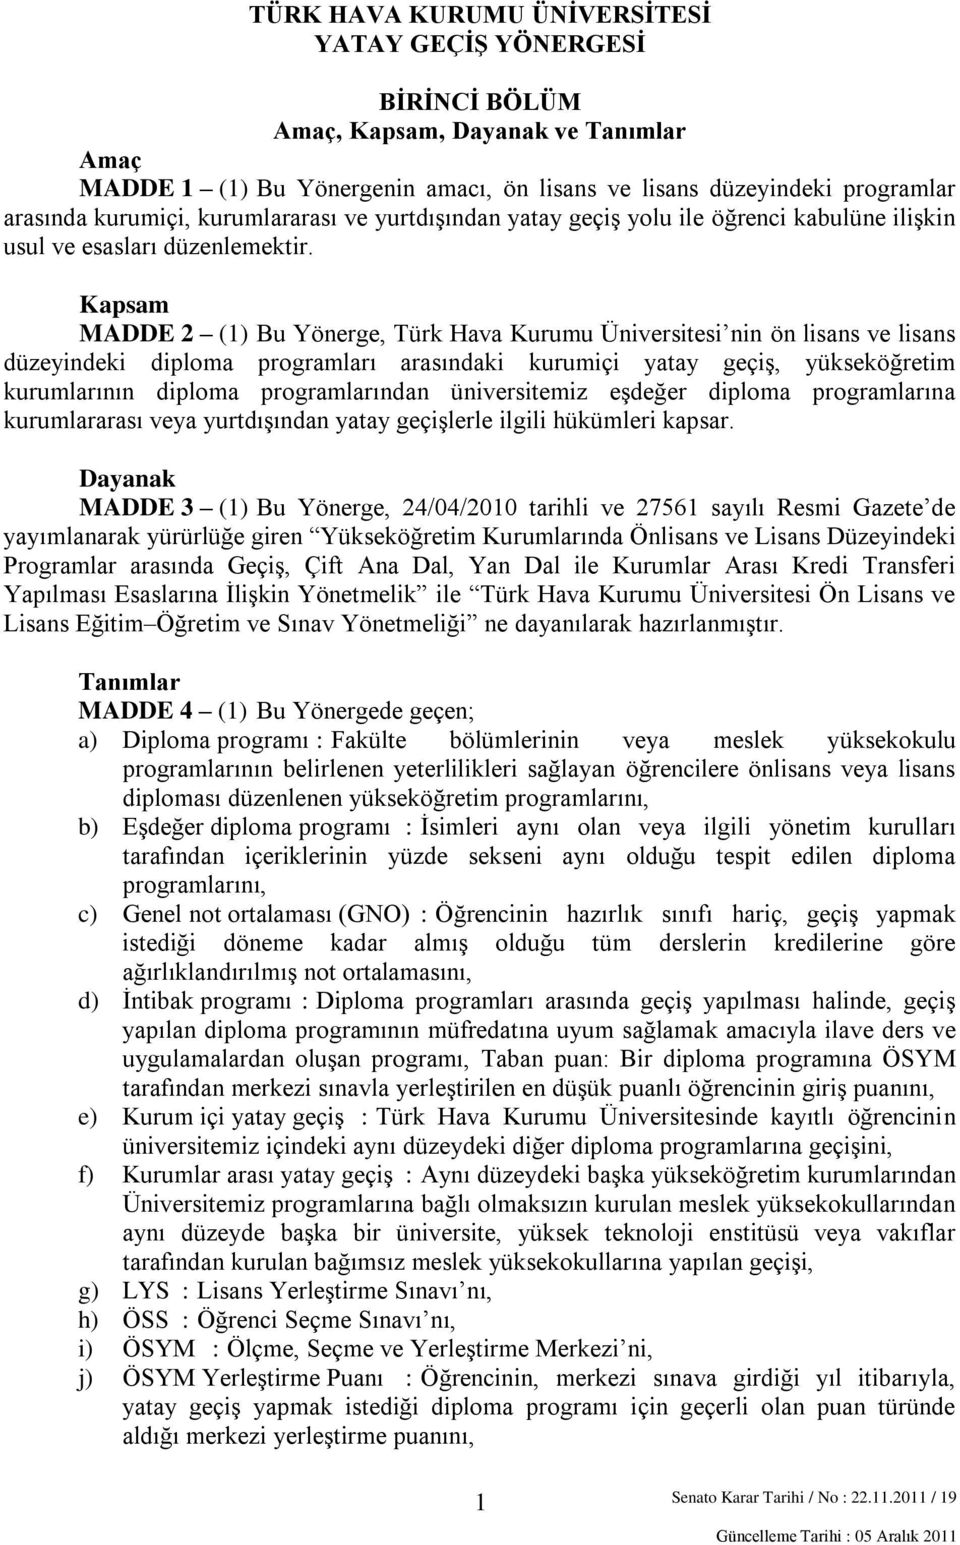 Kapsam MADDE 2 (1) Bu Yönerge, Türk Hava Kurumu Üniversitesi nin ön lisans ve lisans düzeyindeki diploma programları arasındaki kurumiçi yatay geçiş, yükseköğretim kurumlarının diploma